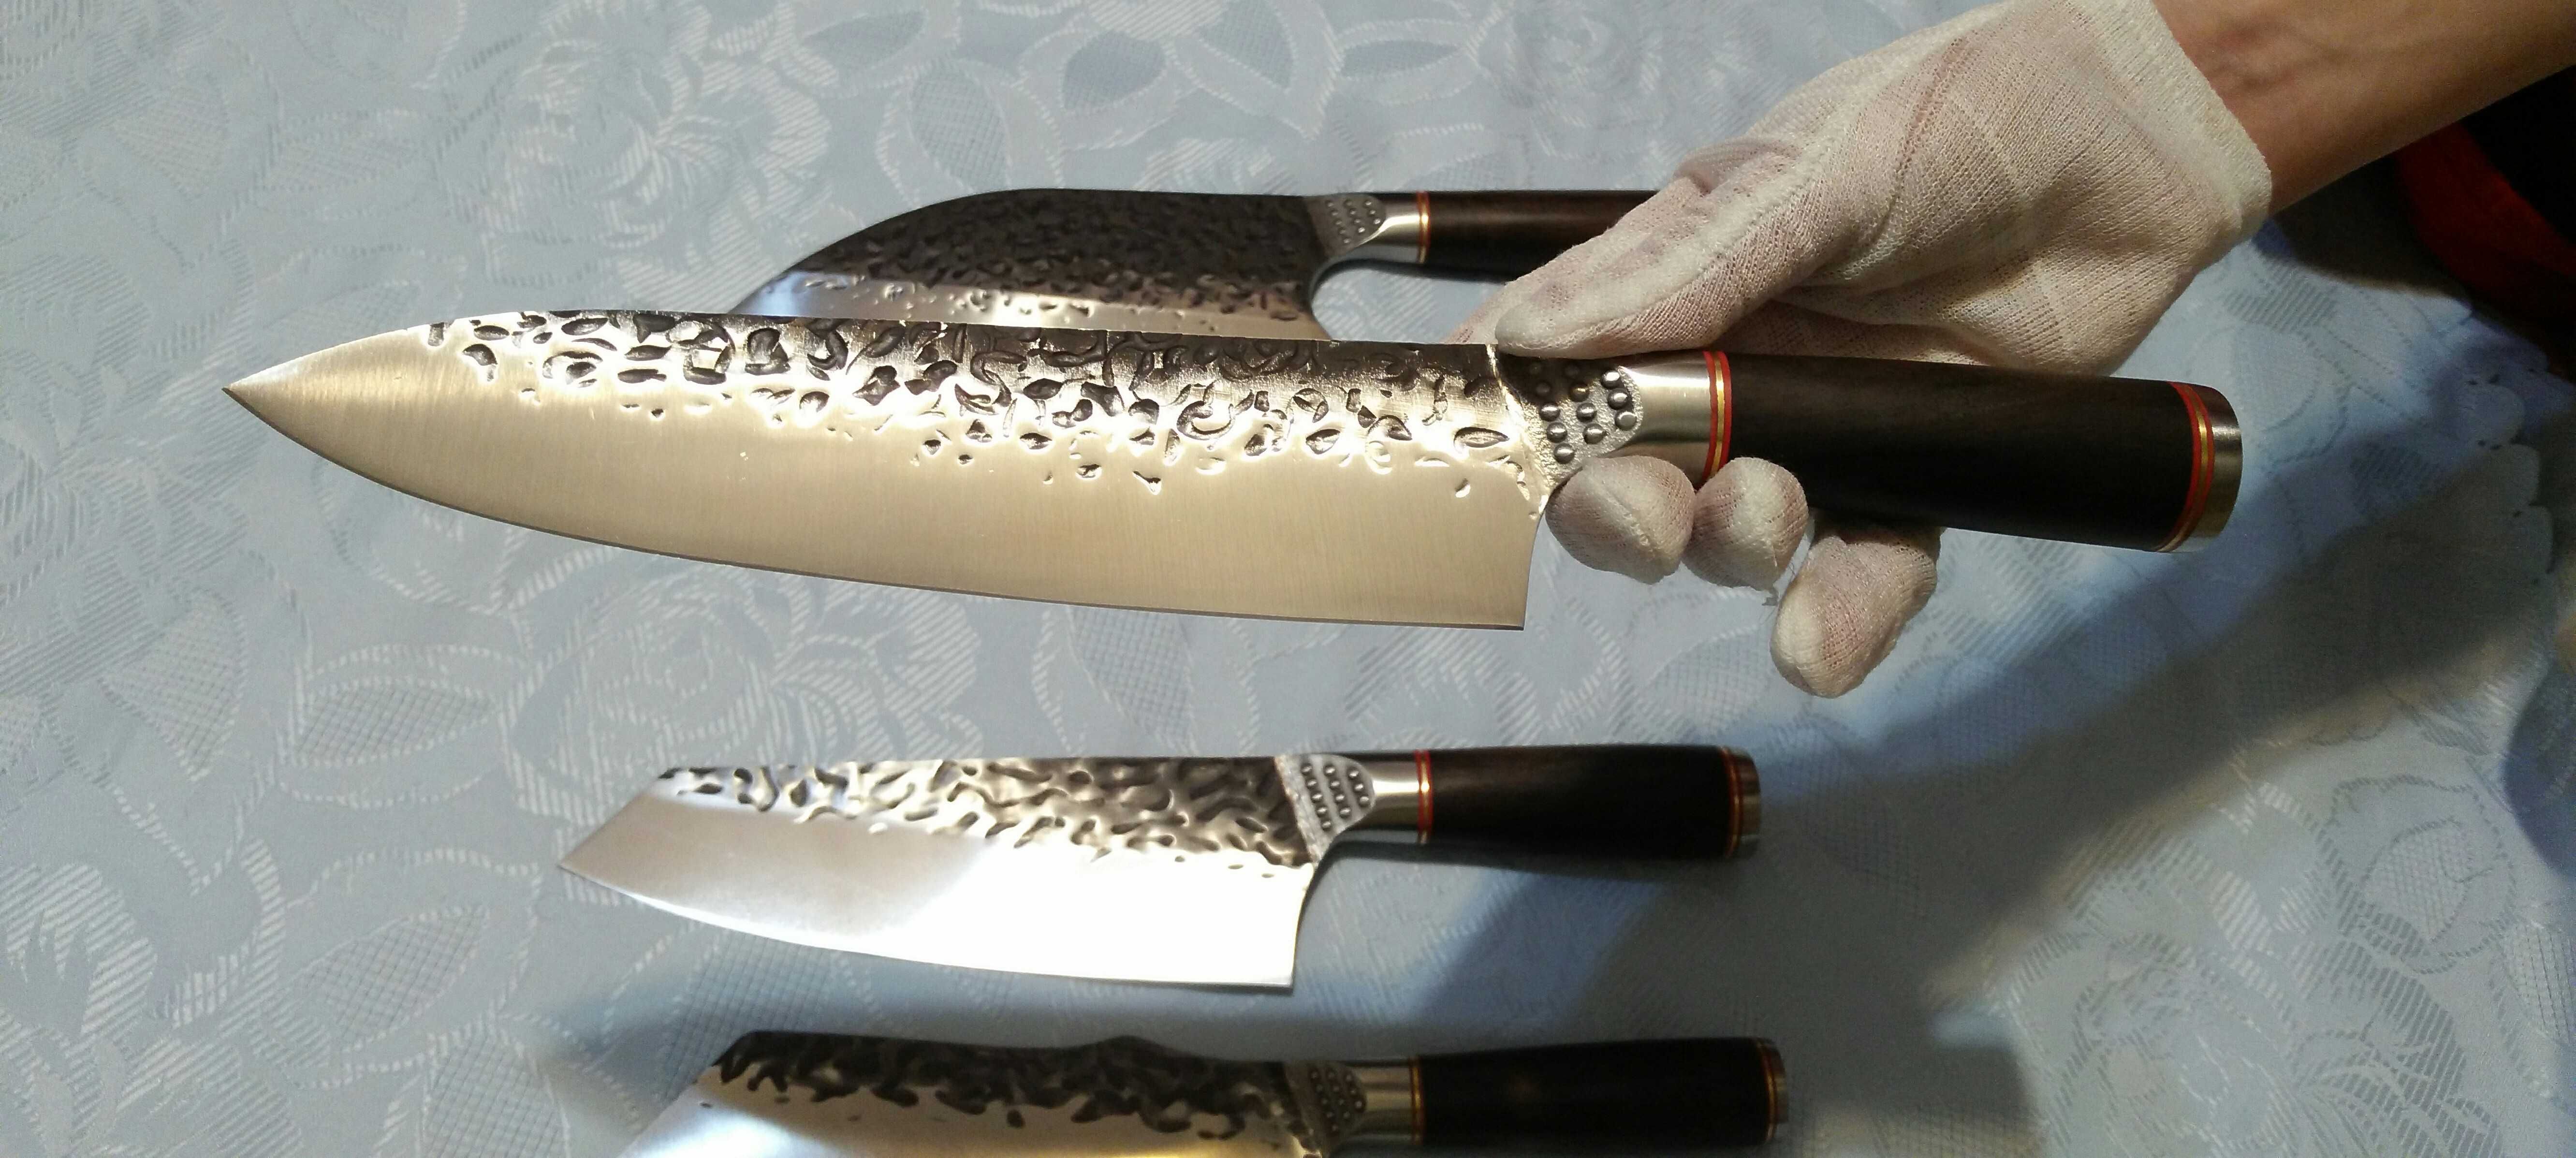 Японский кованый кухонный Шеф нож для мяса, рыбы, овощей (20 см)